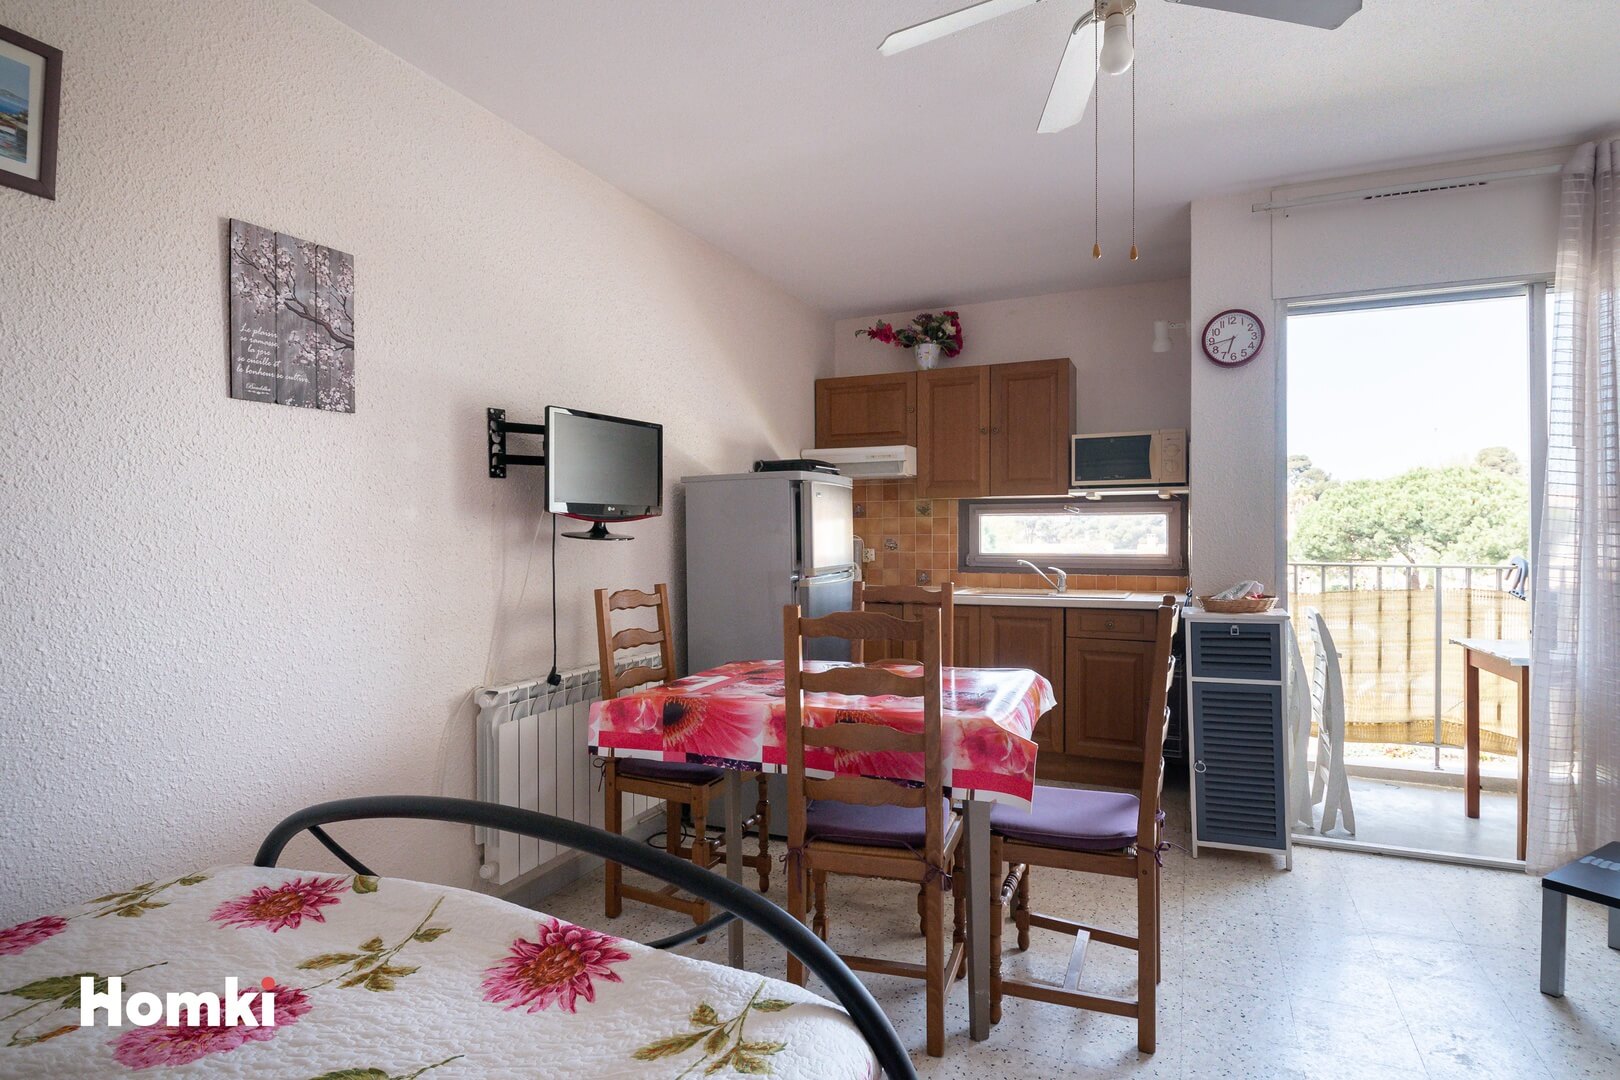 Homki - Vente Appartement  de 21.0 m² à Balaruc-les-Bains 34540